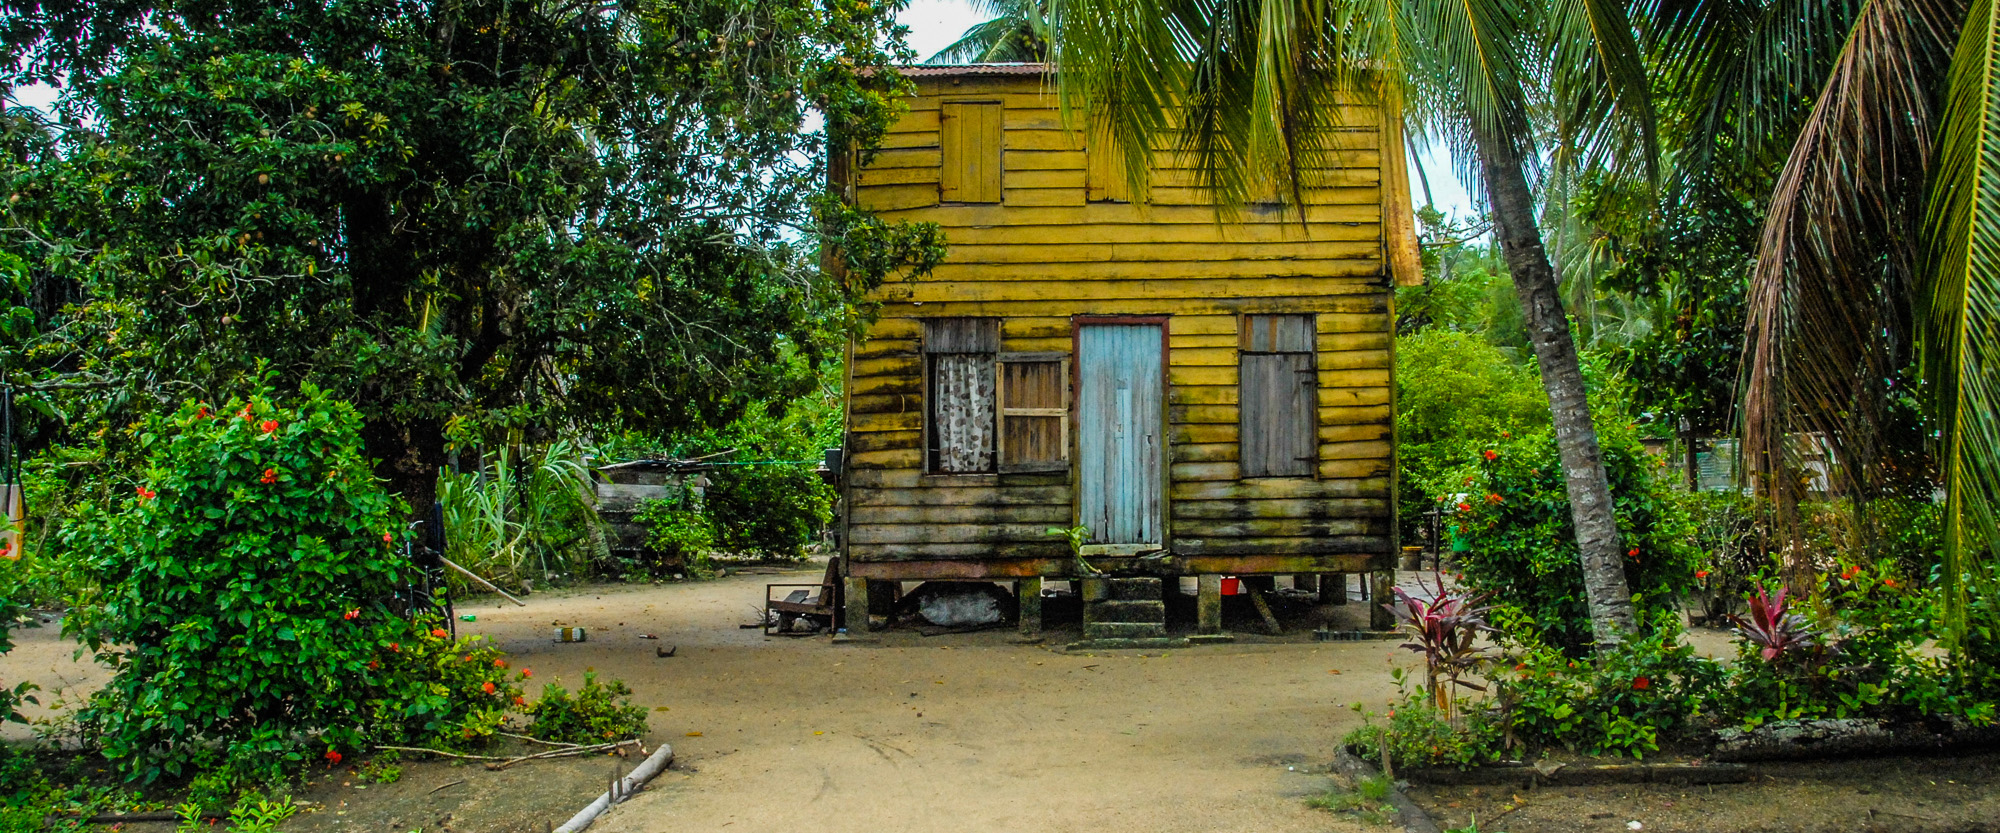 Surinam, a jungle jewel